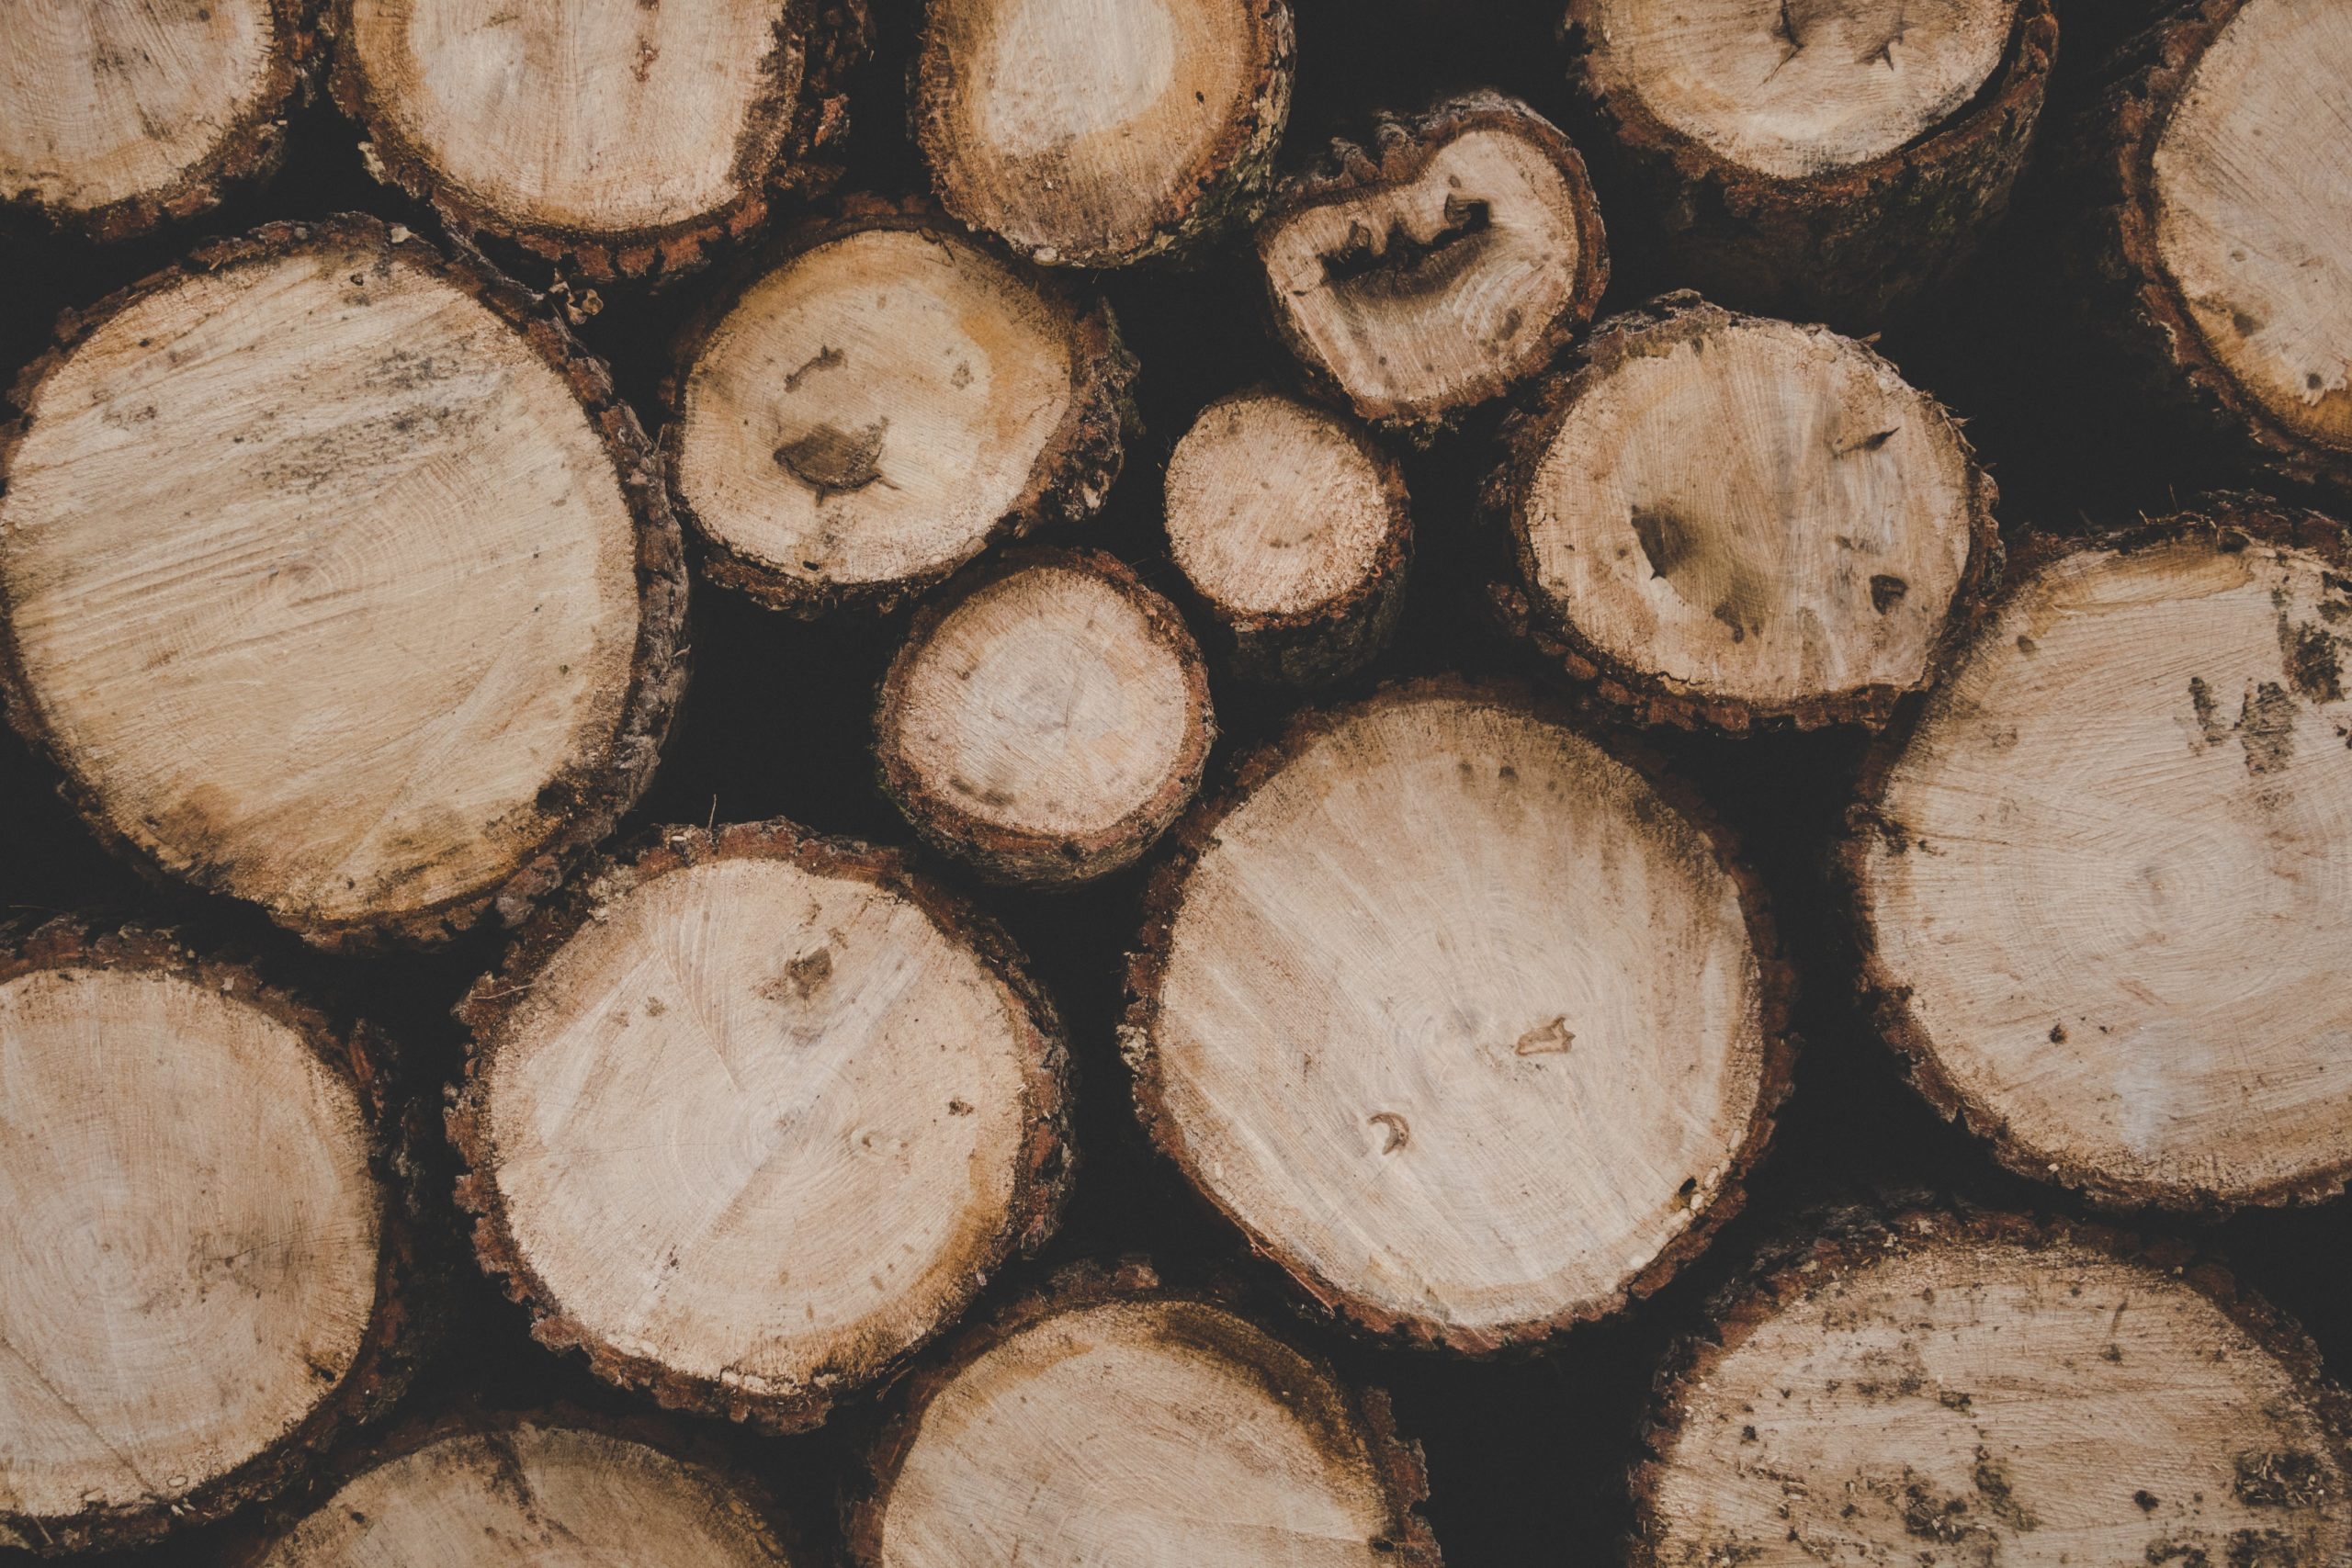 Die Nachfrage nach Holz als Baustoff ist gestiegen, nicht zuletzt auch wegen der Energiewende. Das dürfte die Preise für Rundholz dauerhaft unterstützen, erwarten Experten.